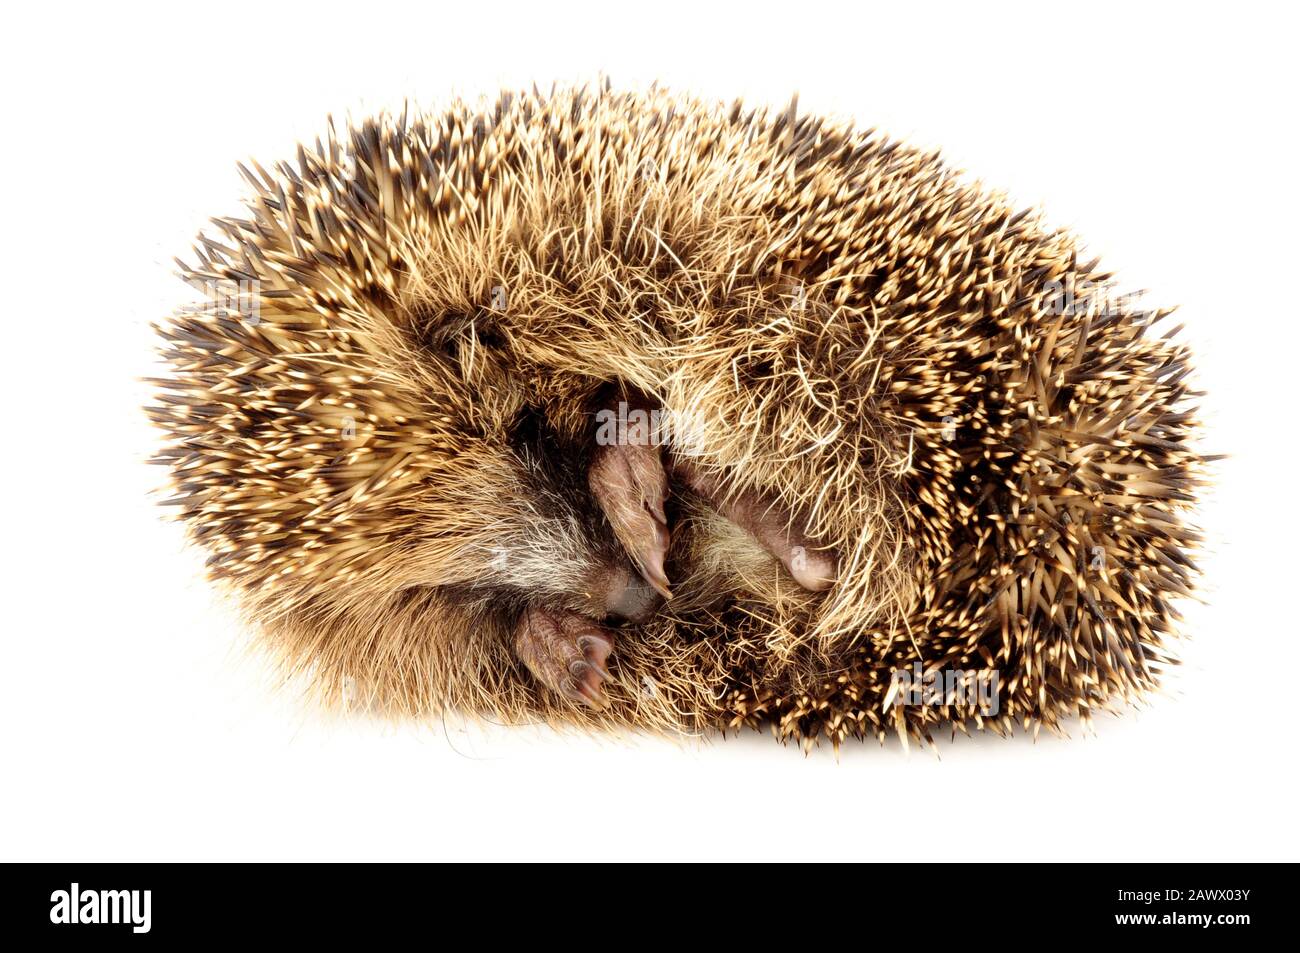 Joven europeo hedgehog rizado en una bola protectora Foto de stock